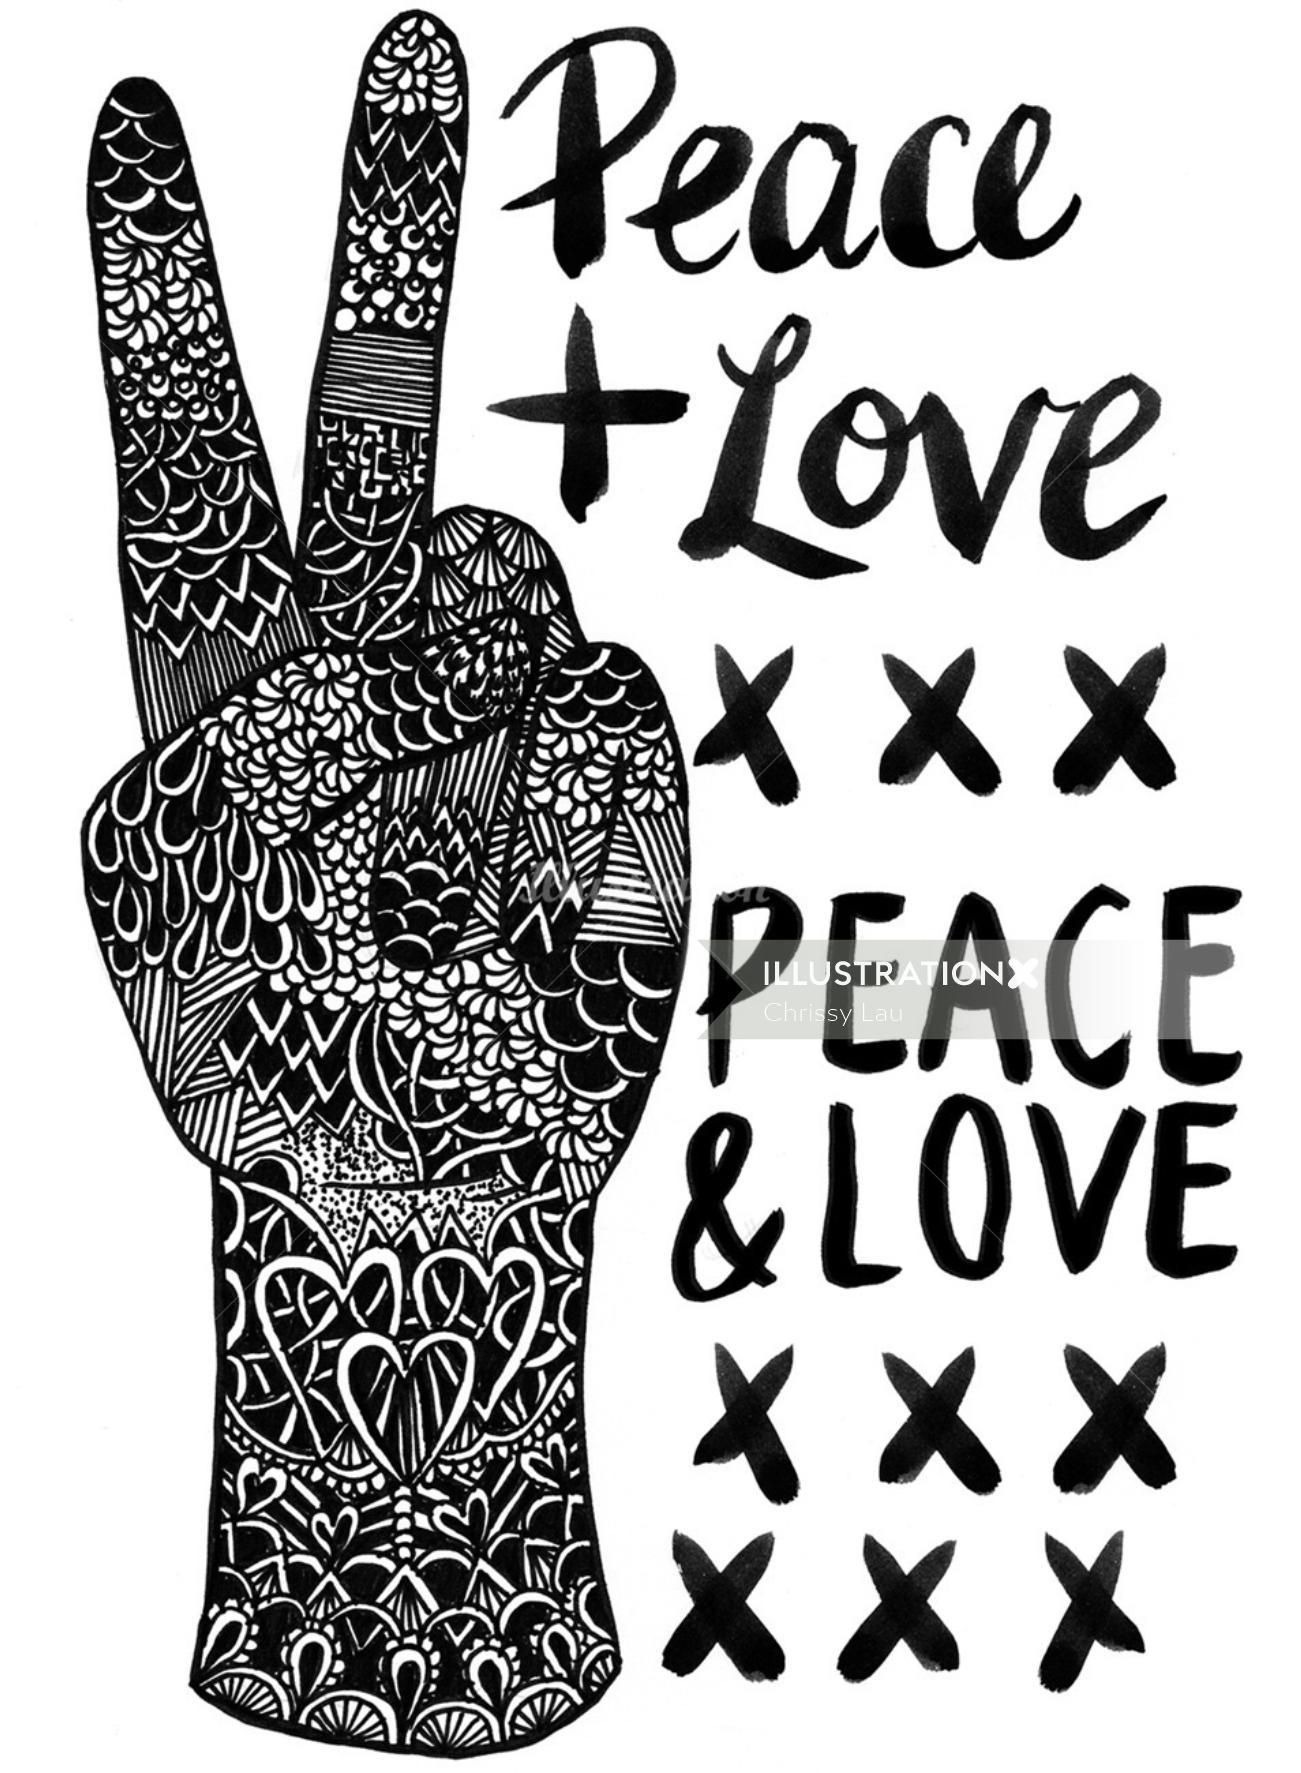 Arte preto e branco do amor da paz